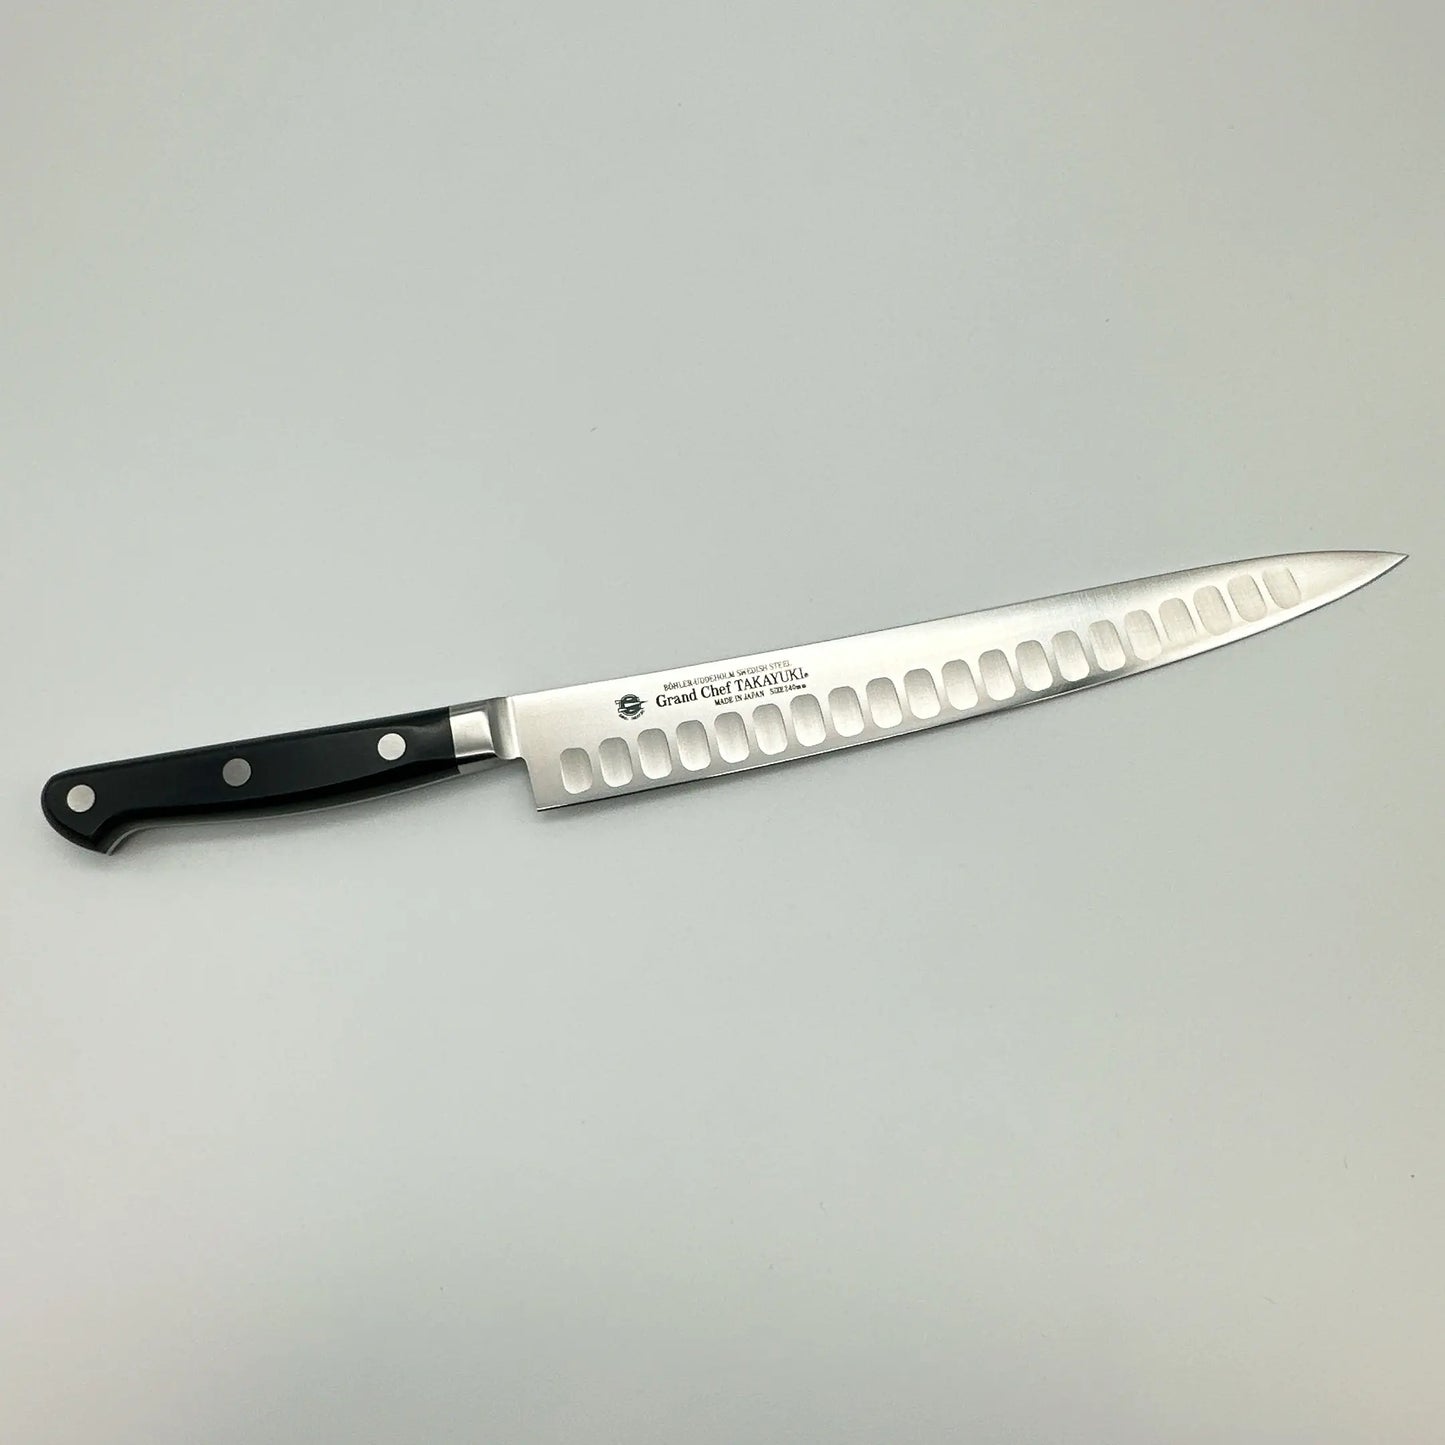 Takayuki Sakai Grand Chef SP SW Steel Salmon Slicer (Sujihiki Type) Western Knife